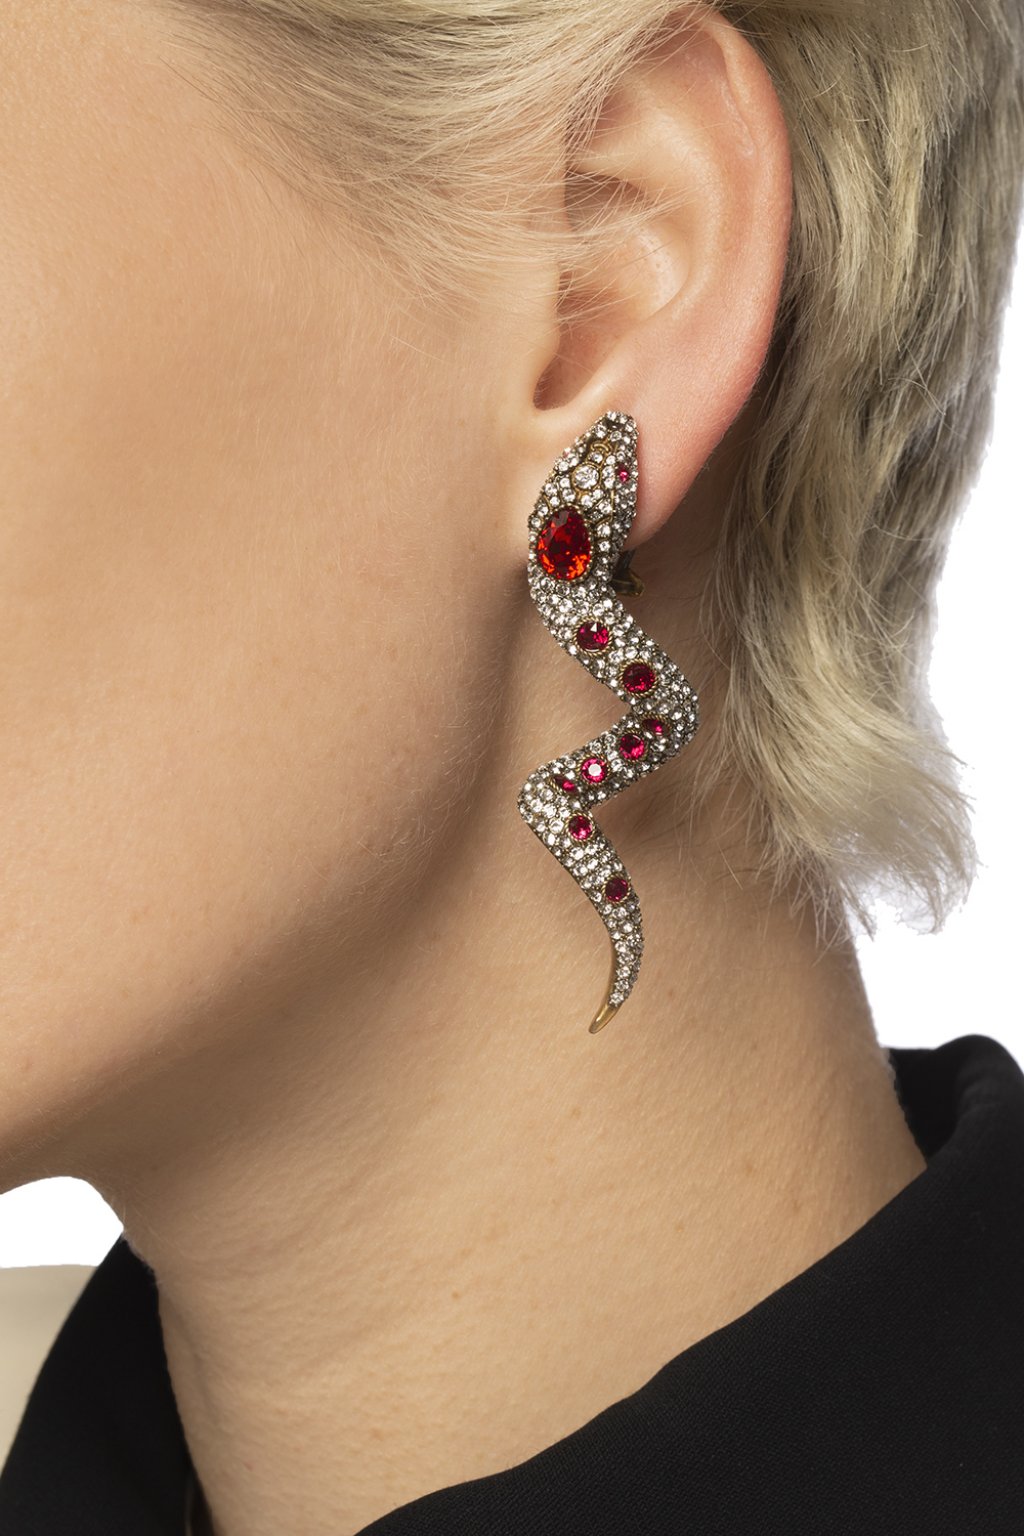 gucci snake earrings